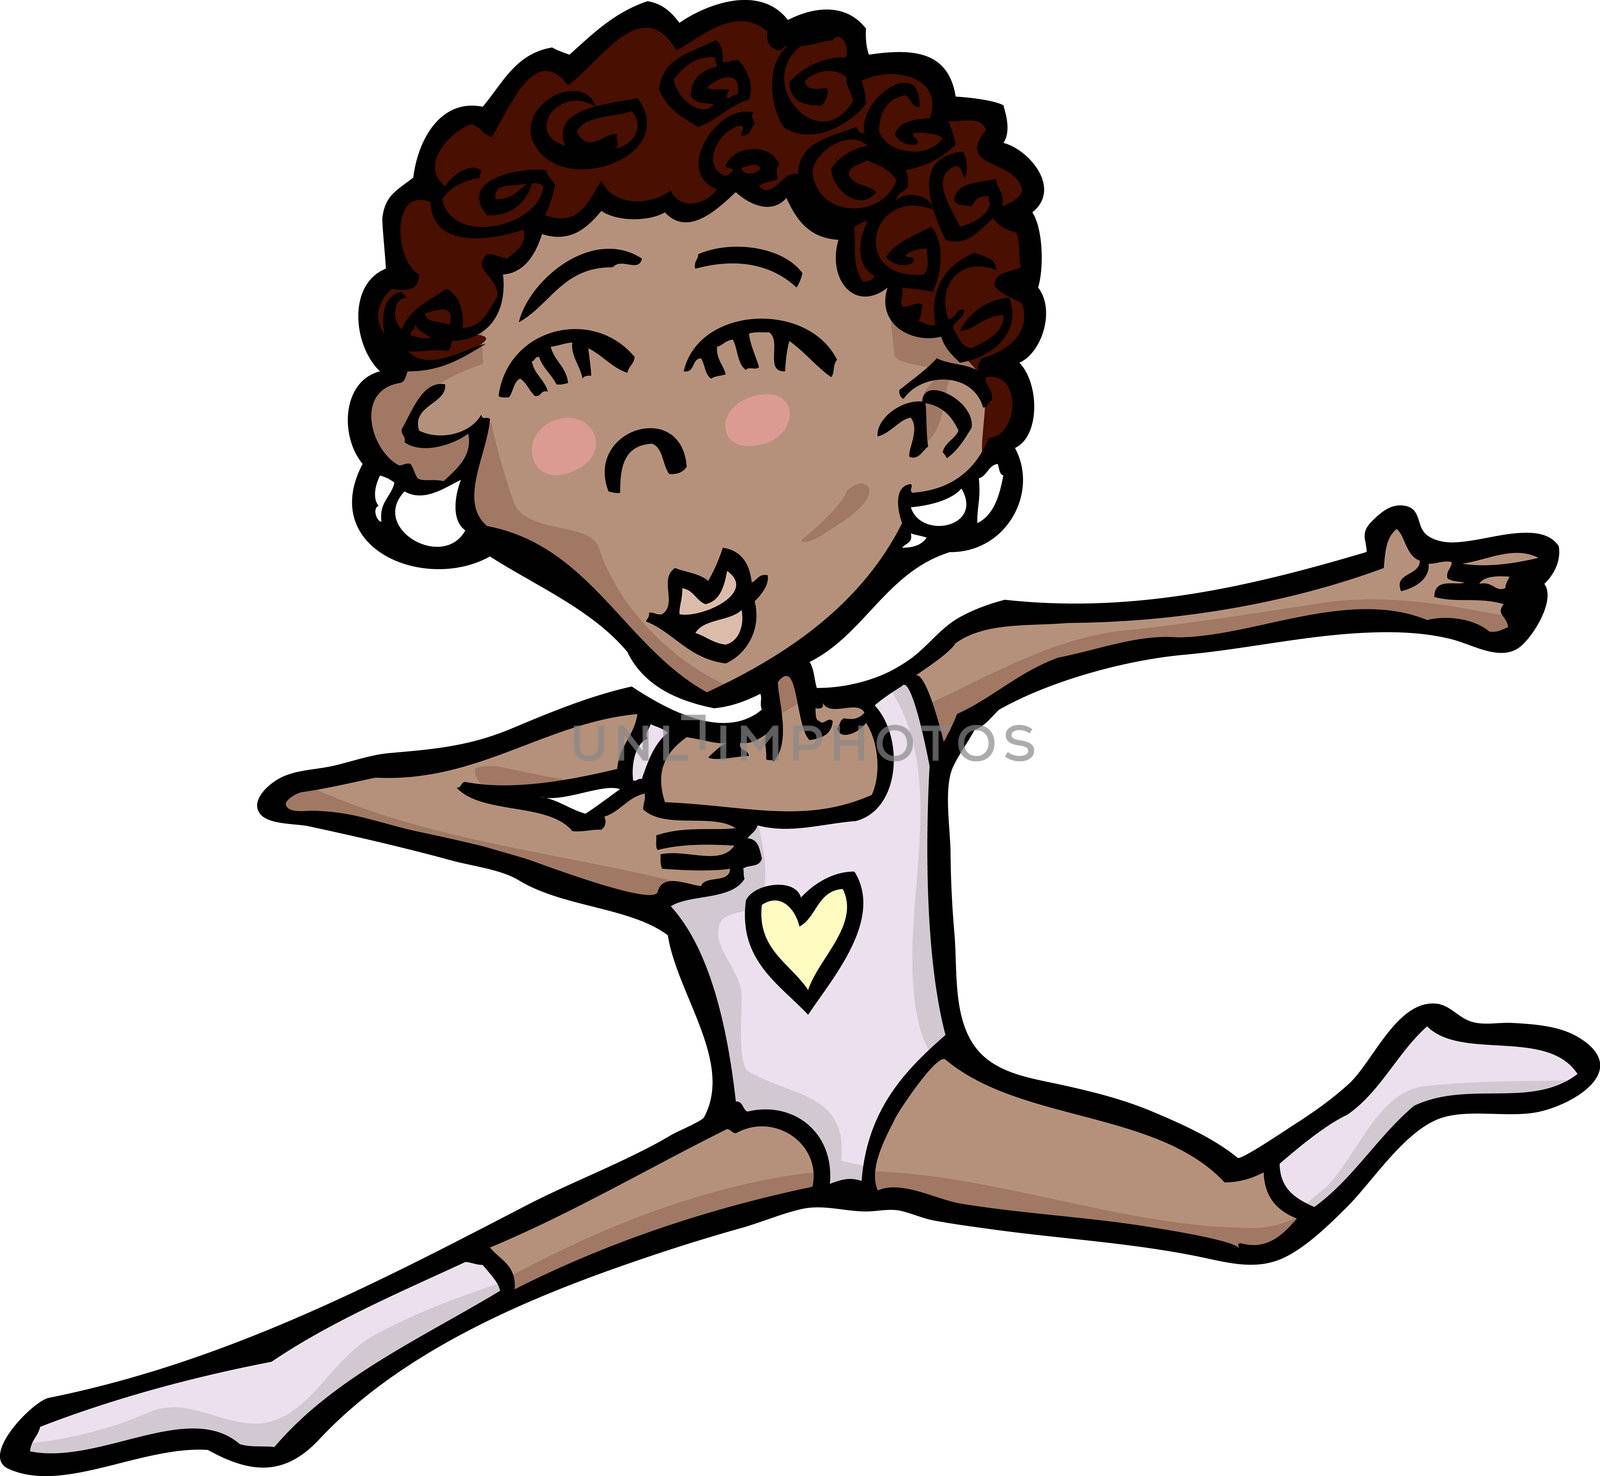 Cartoon illustration of cute Hispanic ballet dancer over white background